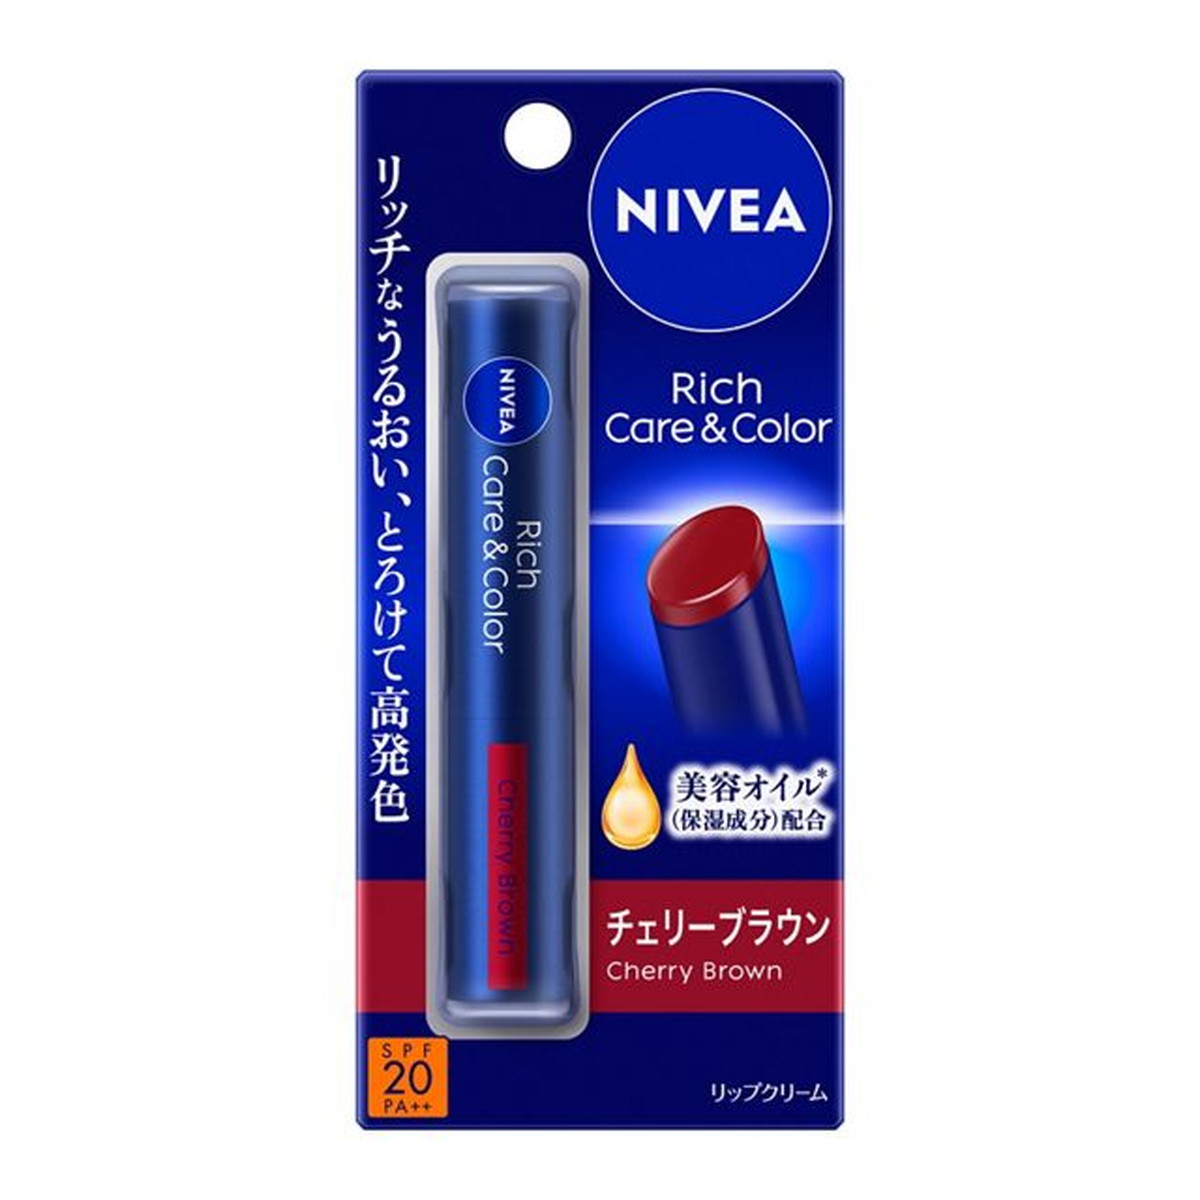 NIVEA ニベア リッチケア＆カラーリップ チェリーブラウン 2g×4 リップケア、リップクリームの商品画像